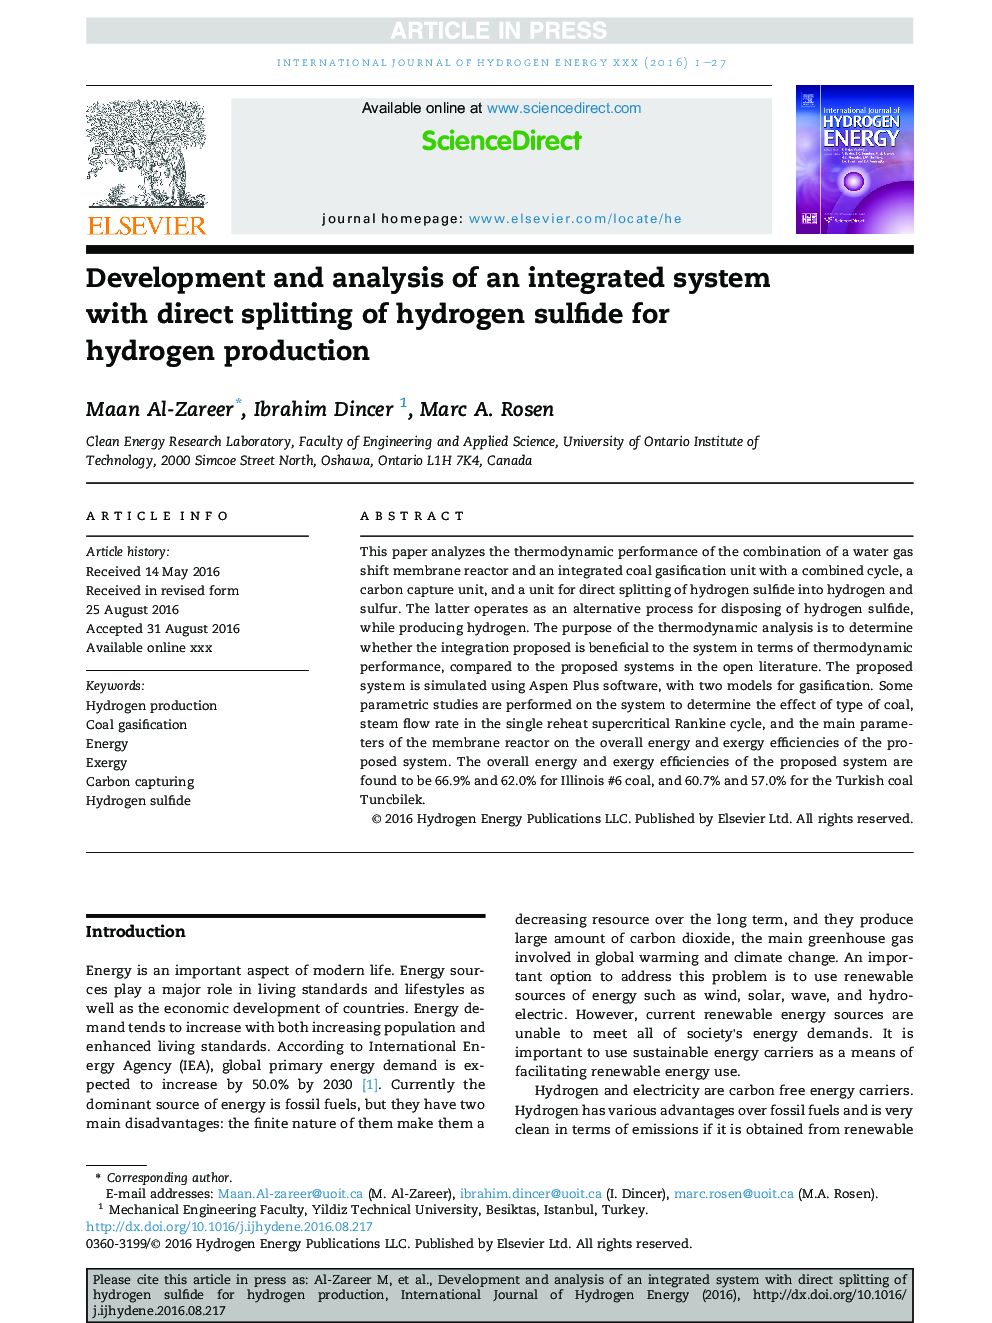 توسعه و تجزیه و تحلیل یک سیستم یکپارچه با تقسیم مستقیم سولفید هیدروژن برای تولید هیدروژن 